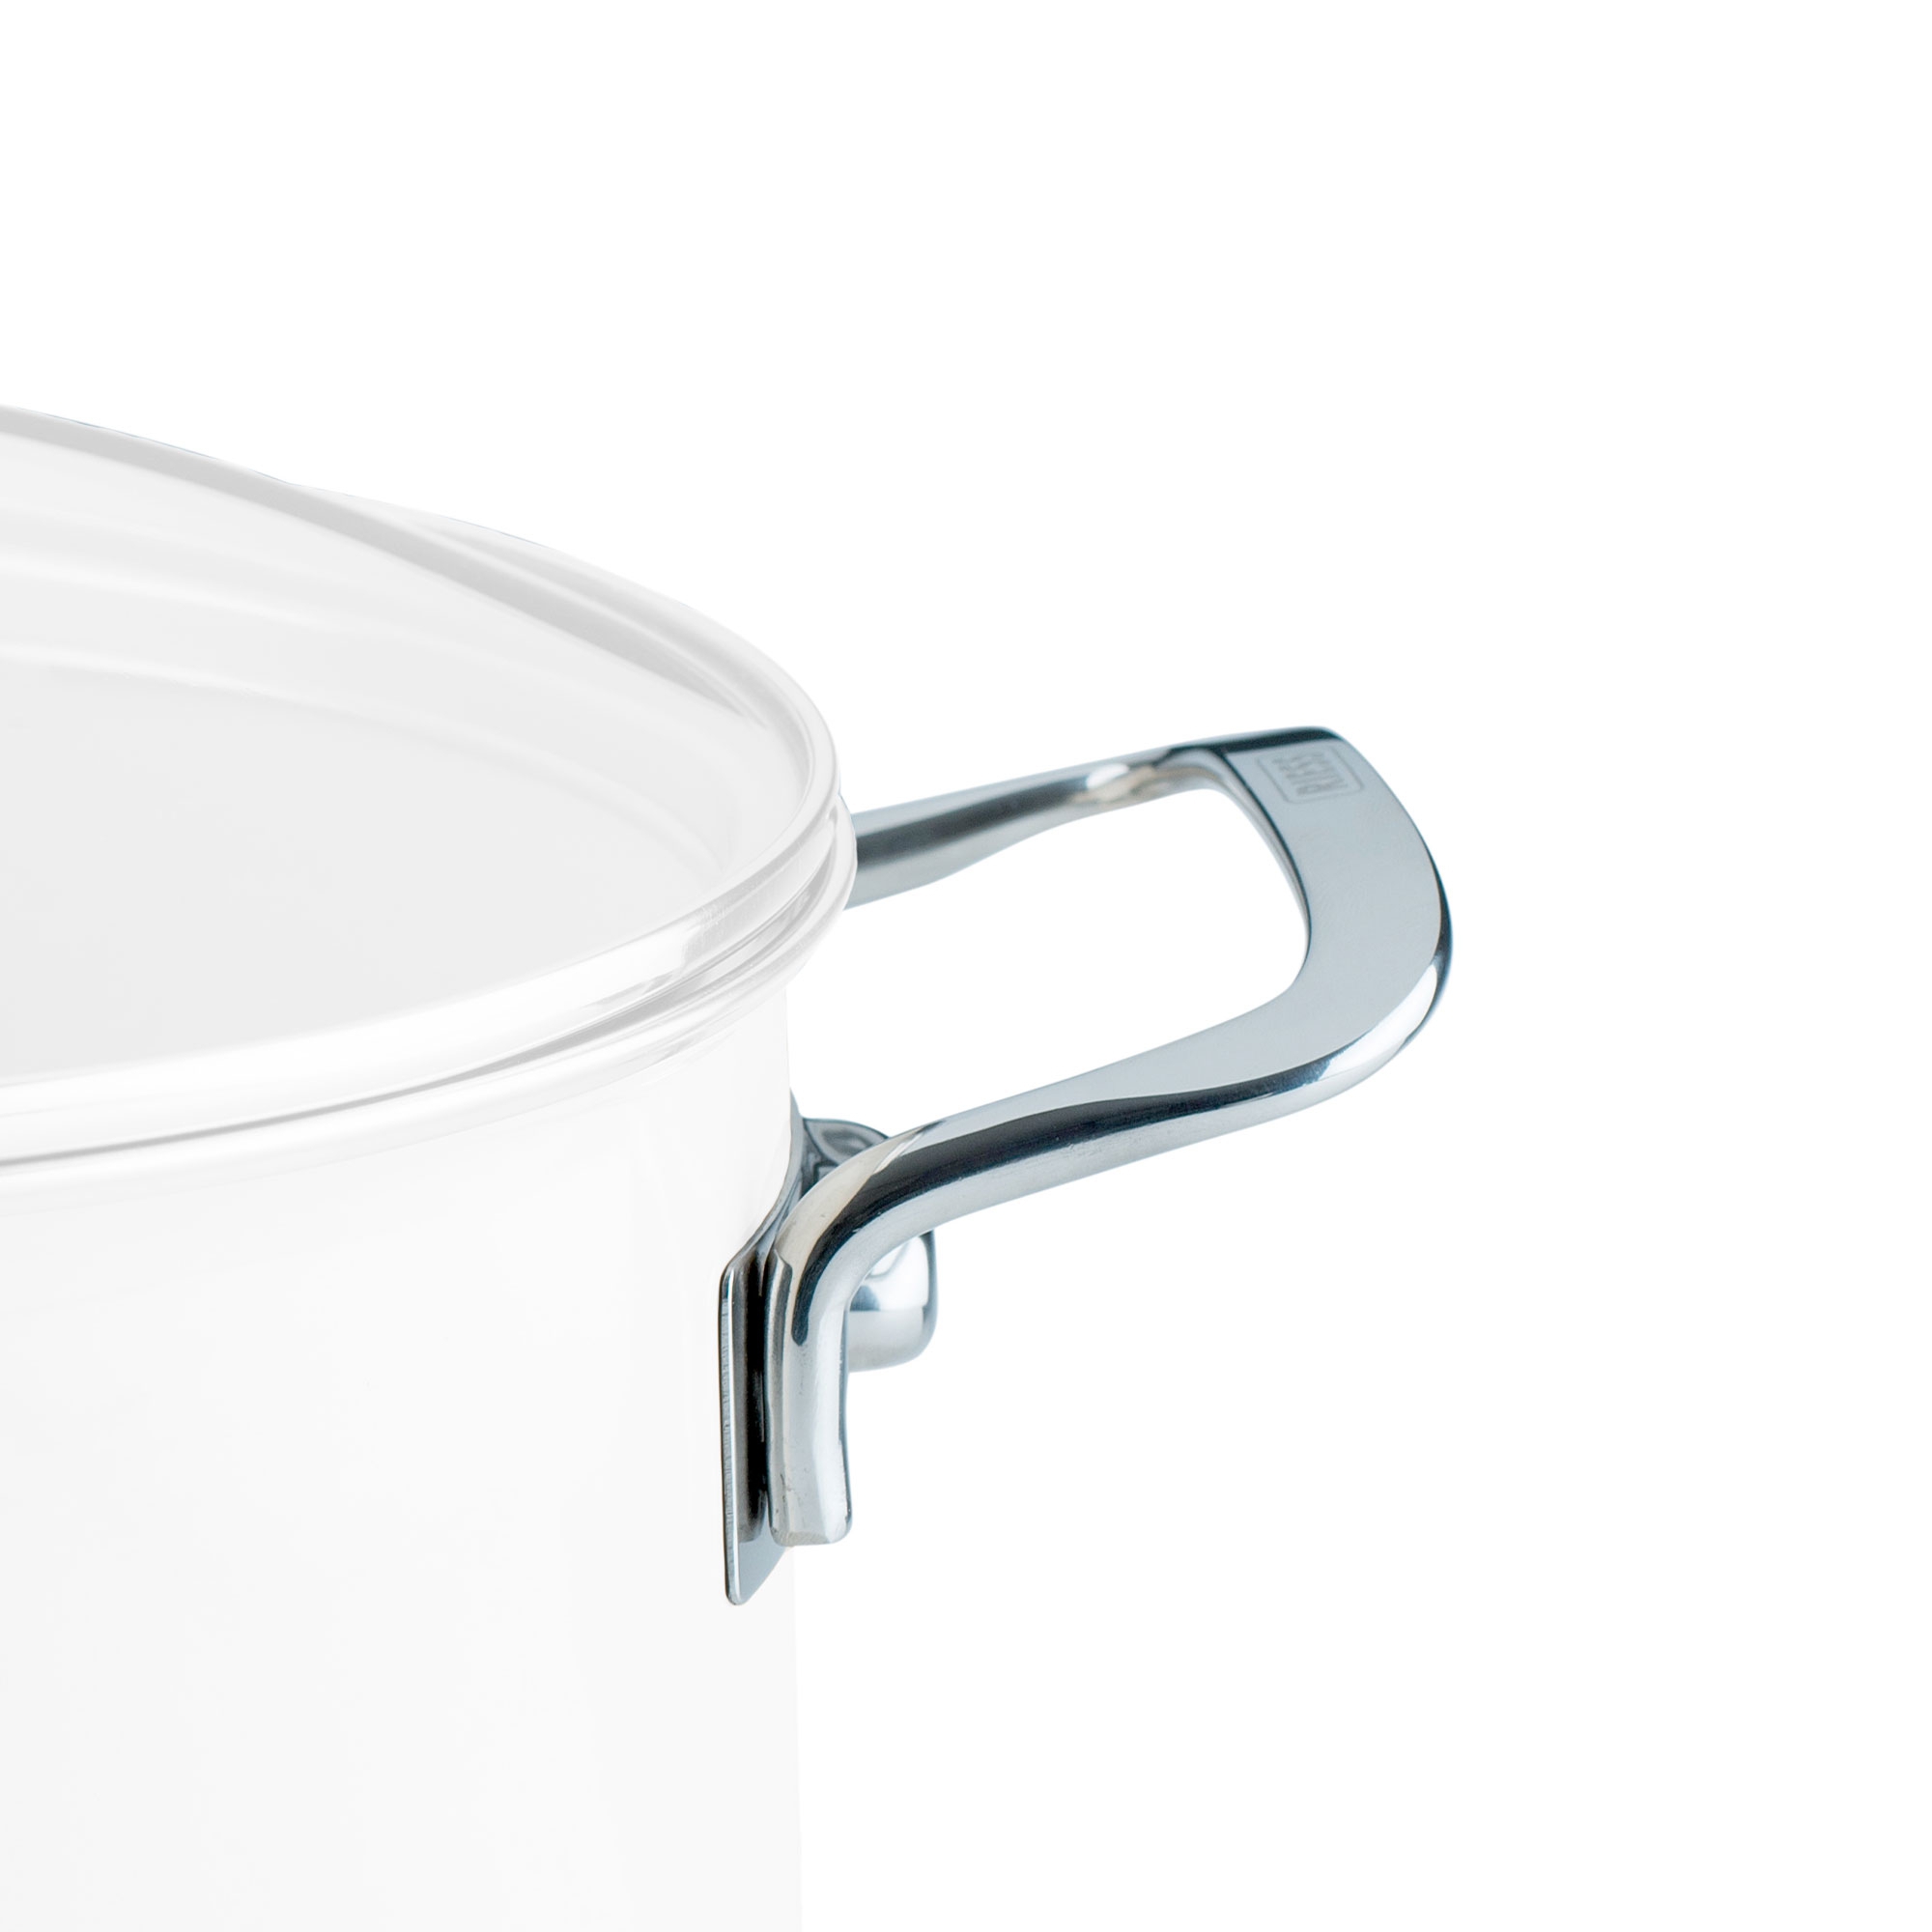 Riess NOUVELLE - replacement side handle Nouvelle for pot/casserole 20 cm